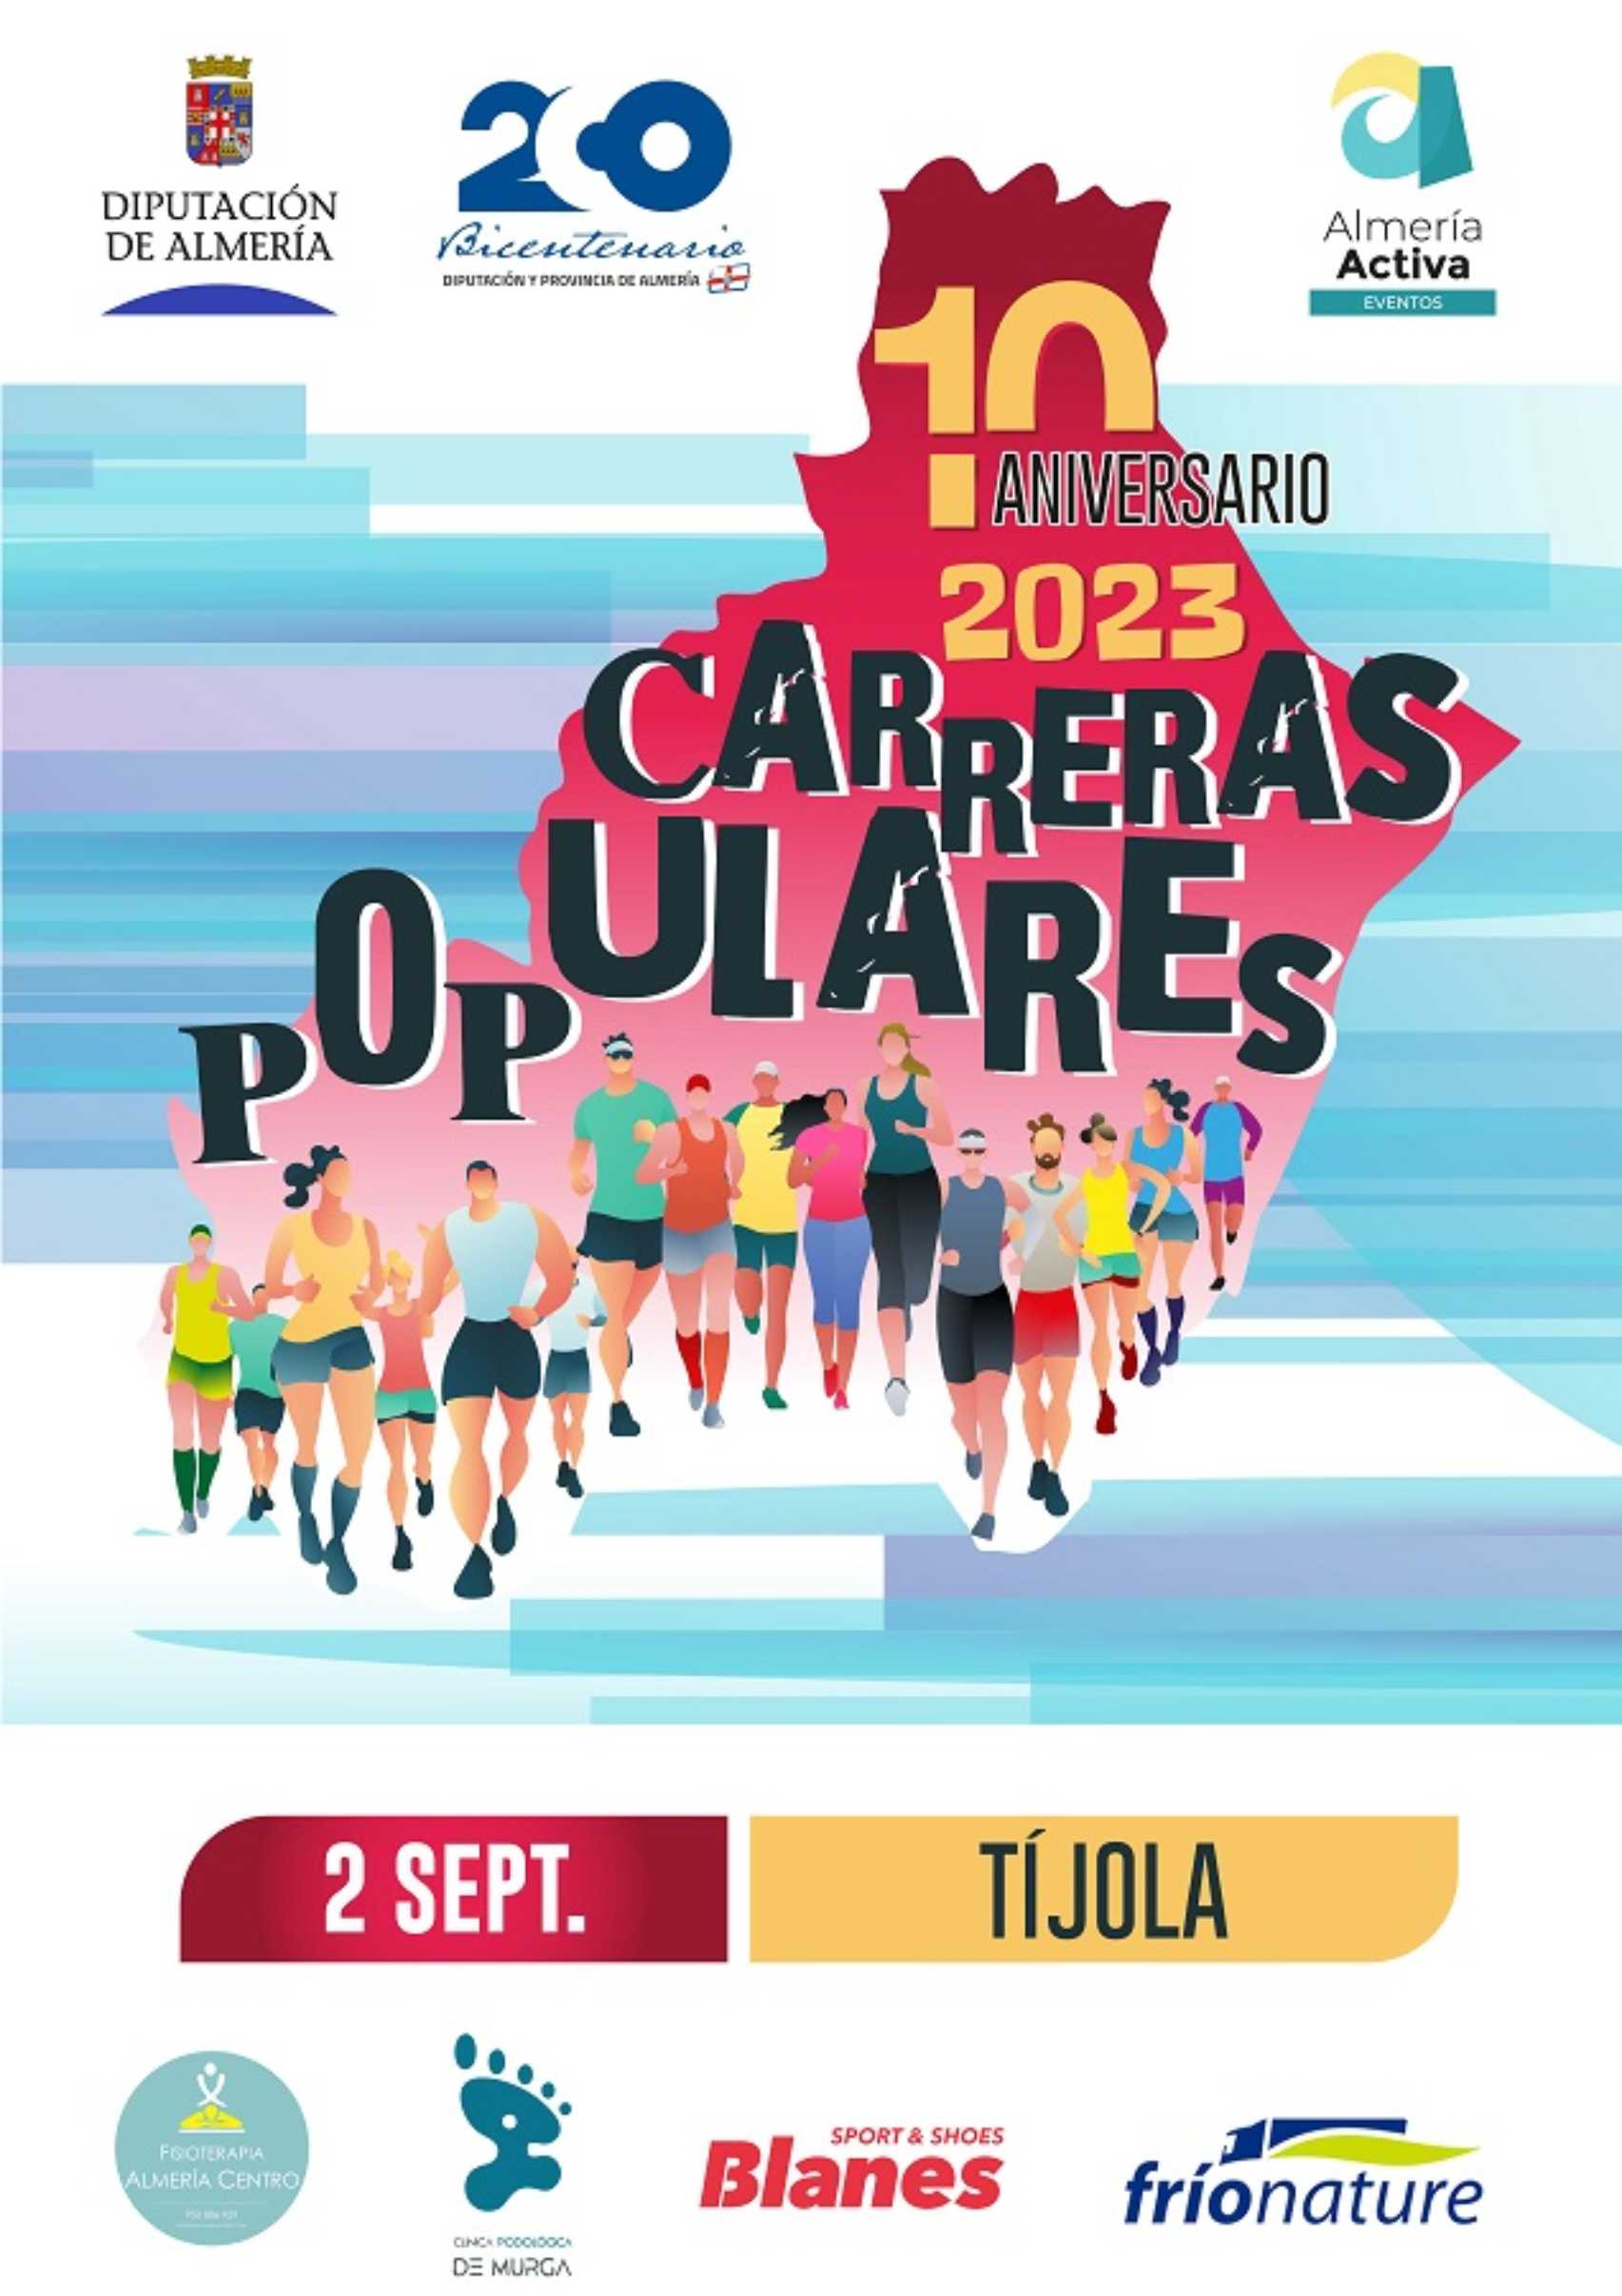 Circuito Provincial de Carreras Populares Diputación de Almería. Macael 30-9-23